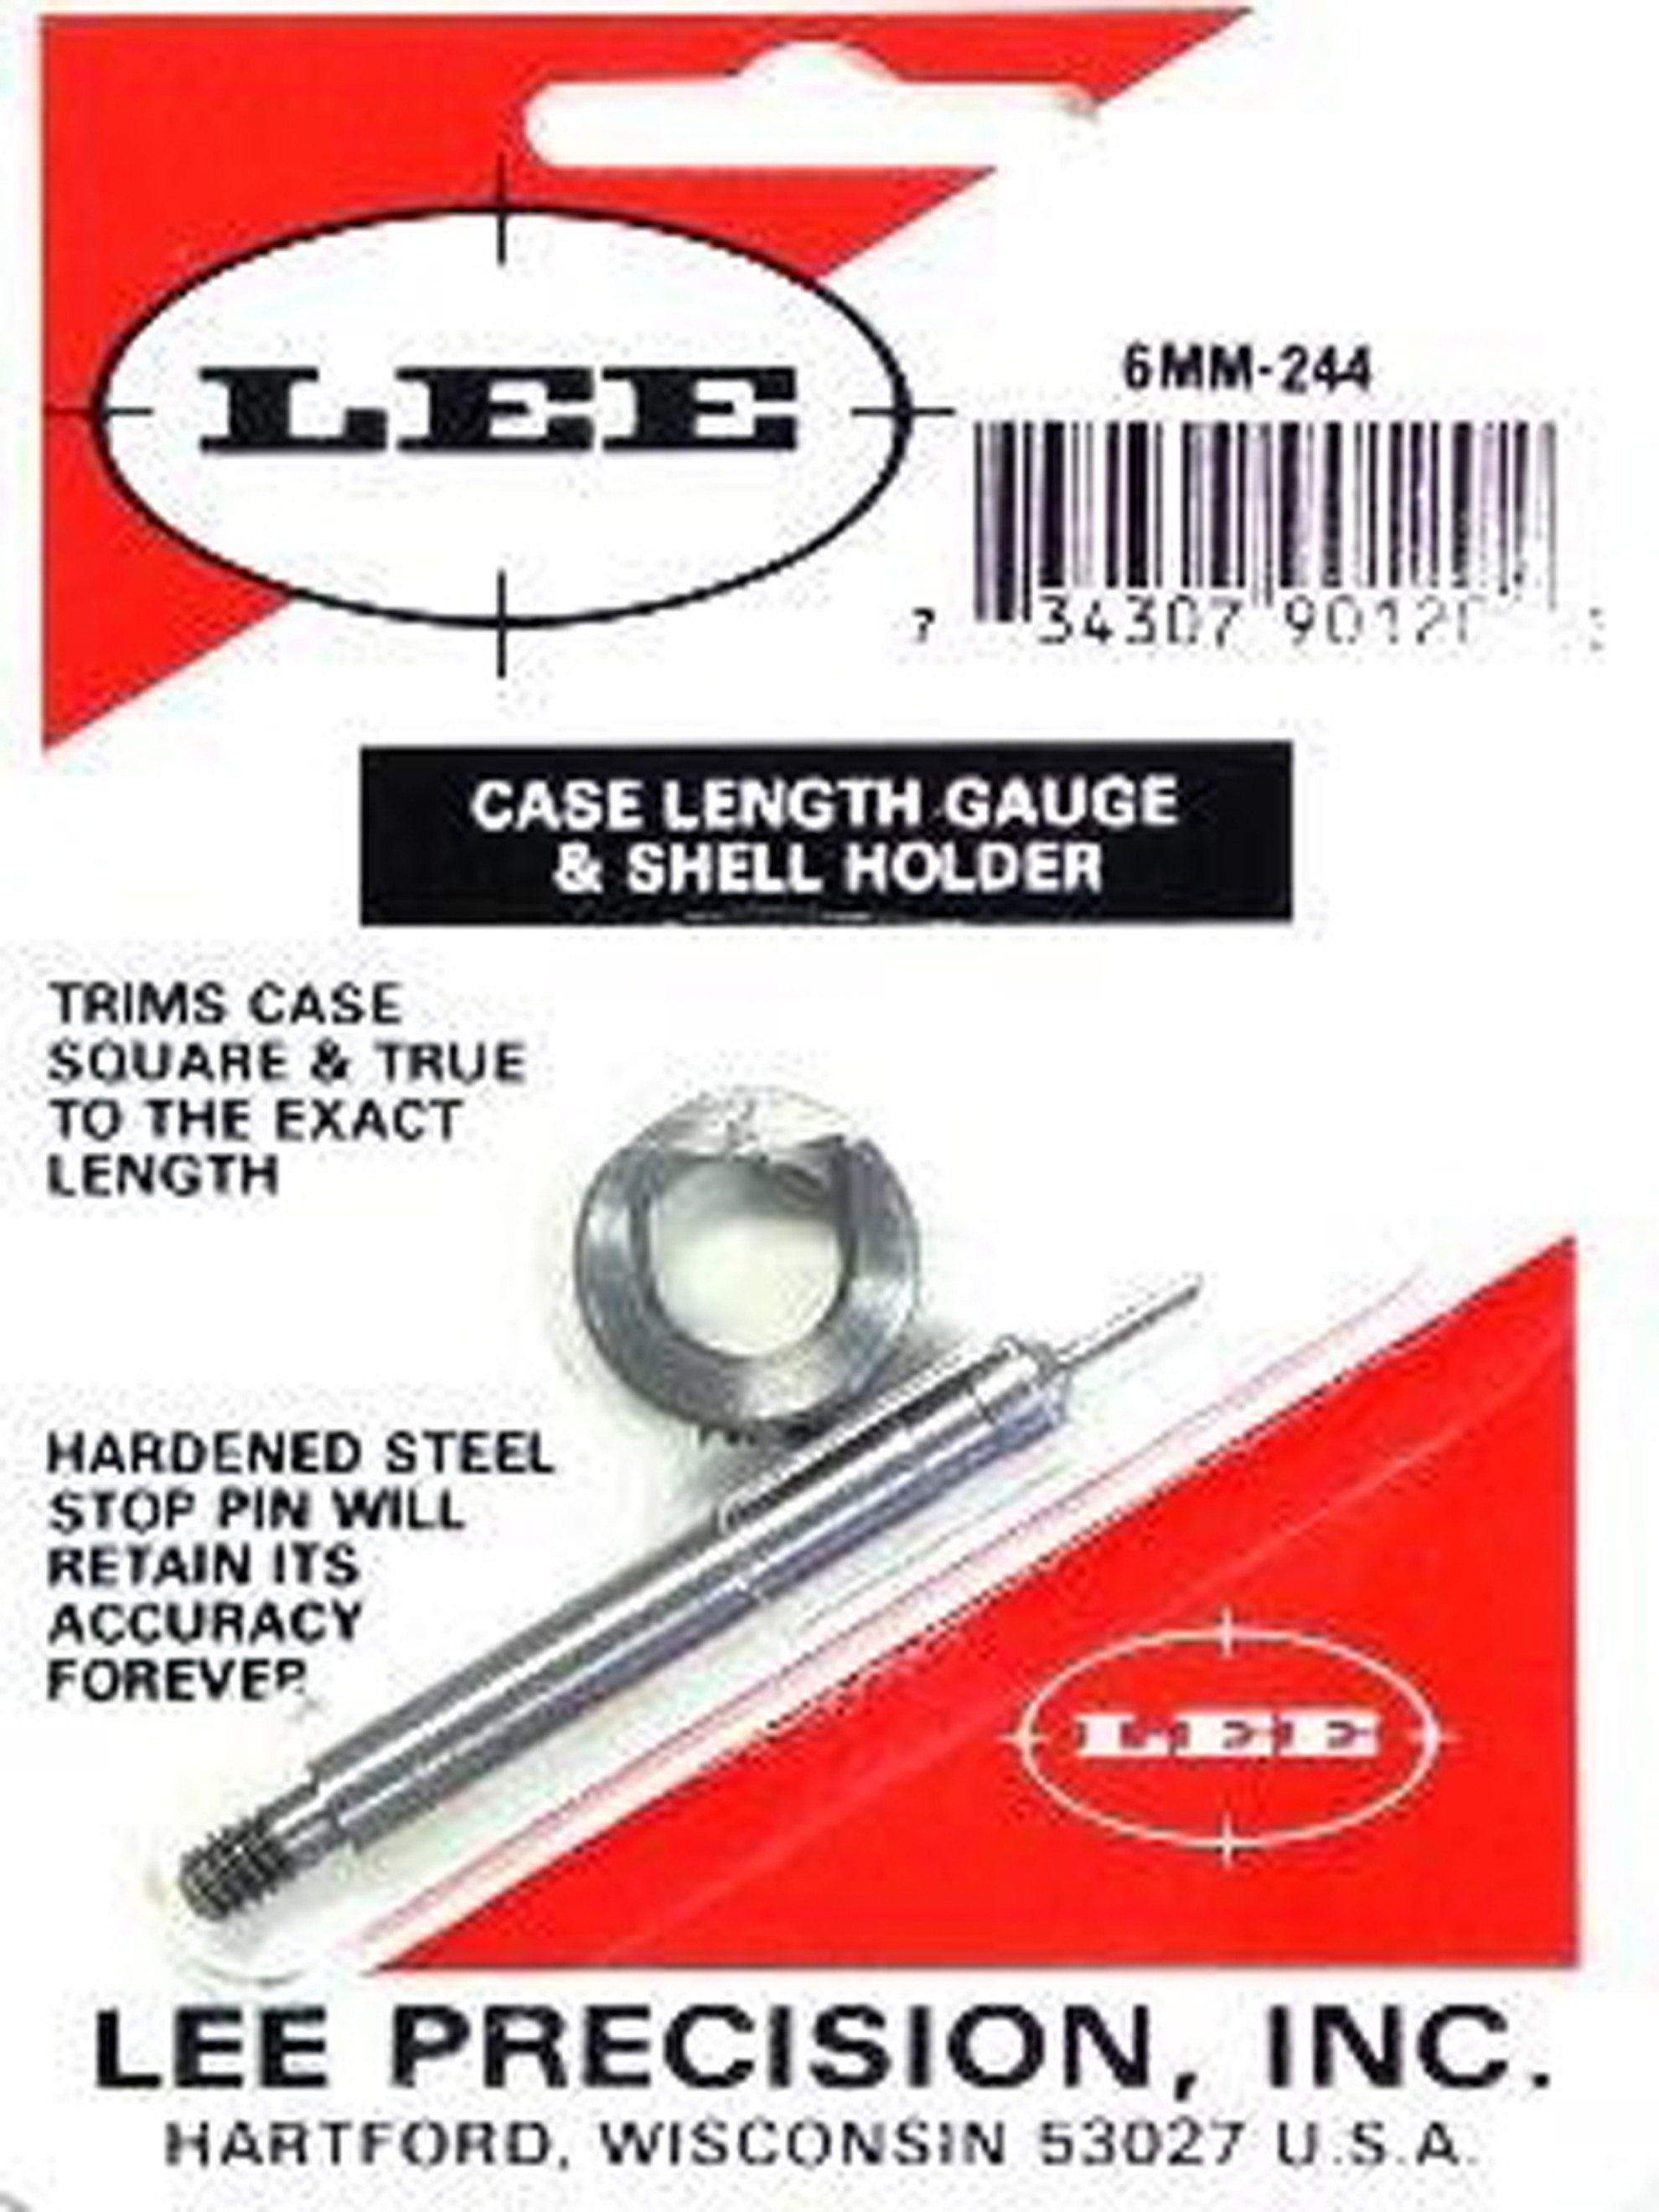 6mm Rem Case Gauge & Shell Holder